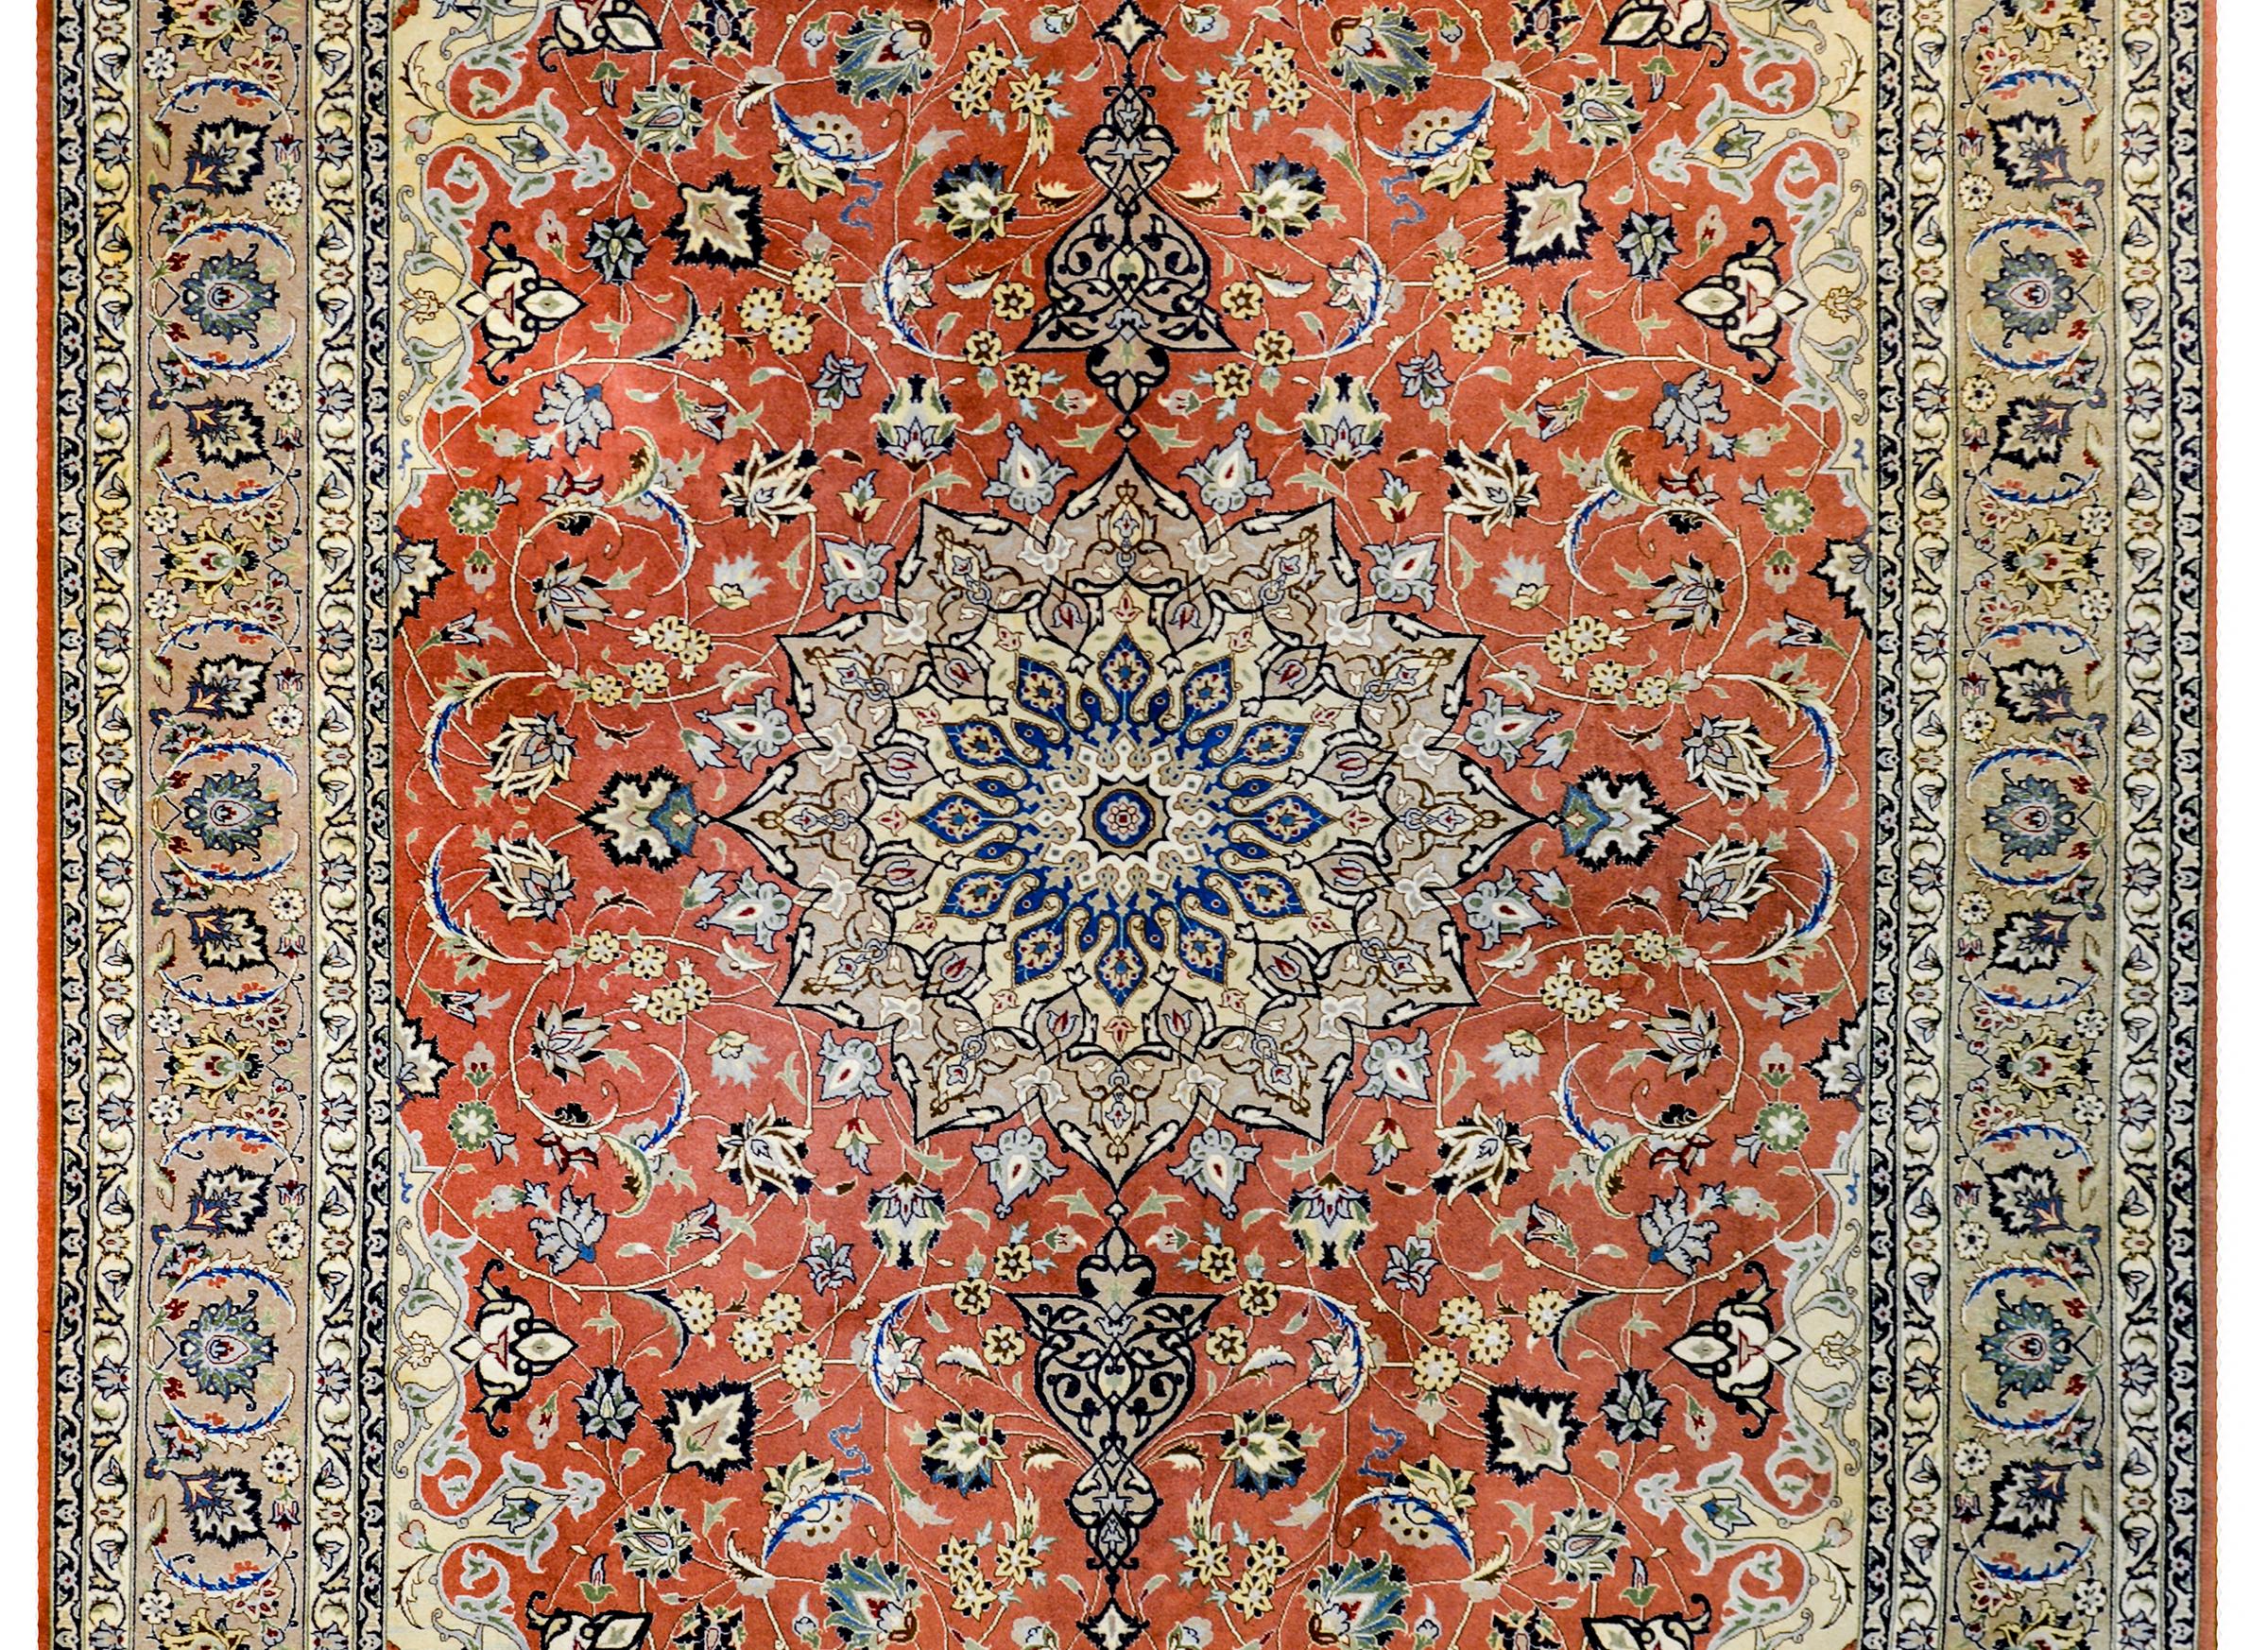 Très beau Tabriz persan de la fin du XXe siècle, au motif fascinant contenant un grand médaillon central à plusieurs lobes sur un champ orange de vignes, de feuilles et de myriades de fleurs en fleurs. La bordure est magnifique avec une large bande